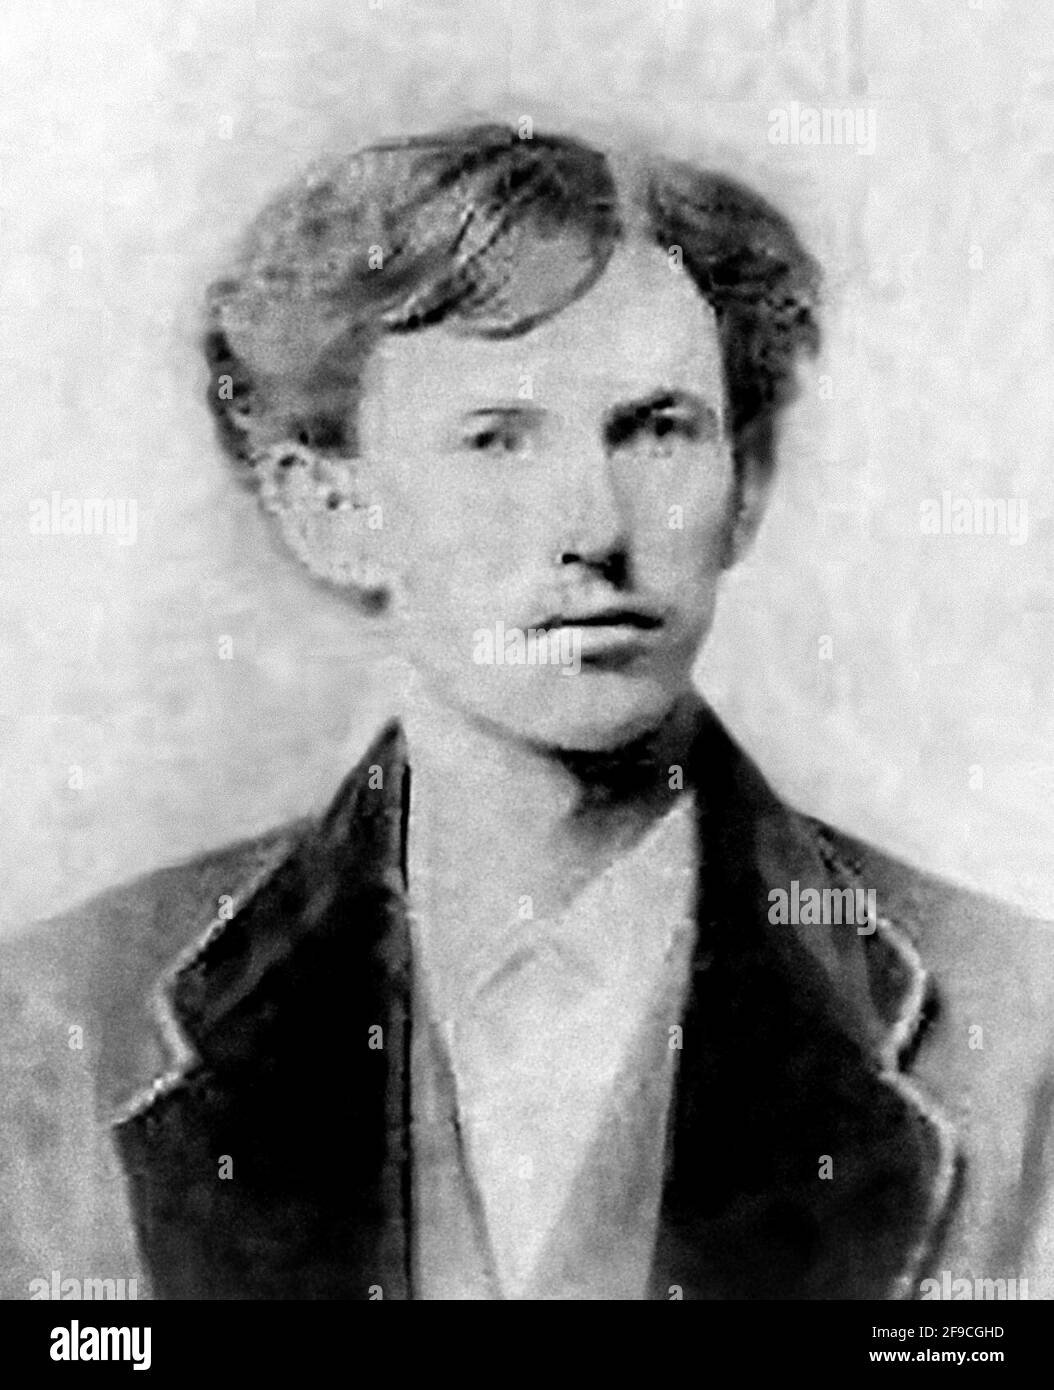 DOC Holliday. Ritratto del giocatore americano e gunfighter, John Henry doc Holliday (1851-1887), foto di laurea della Pennsylvania School of Dentistry, marzo 1872. Si tratta di una delle due fotografie autenticate di Doc Holliday. Foto Stock